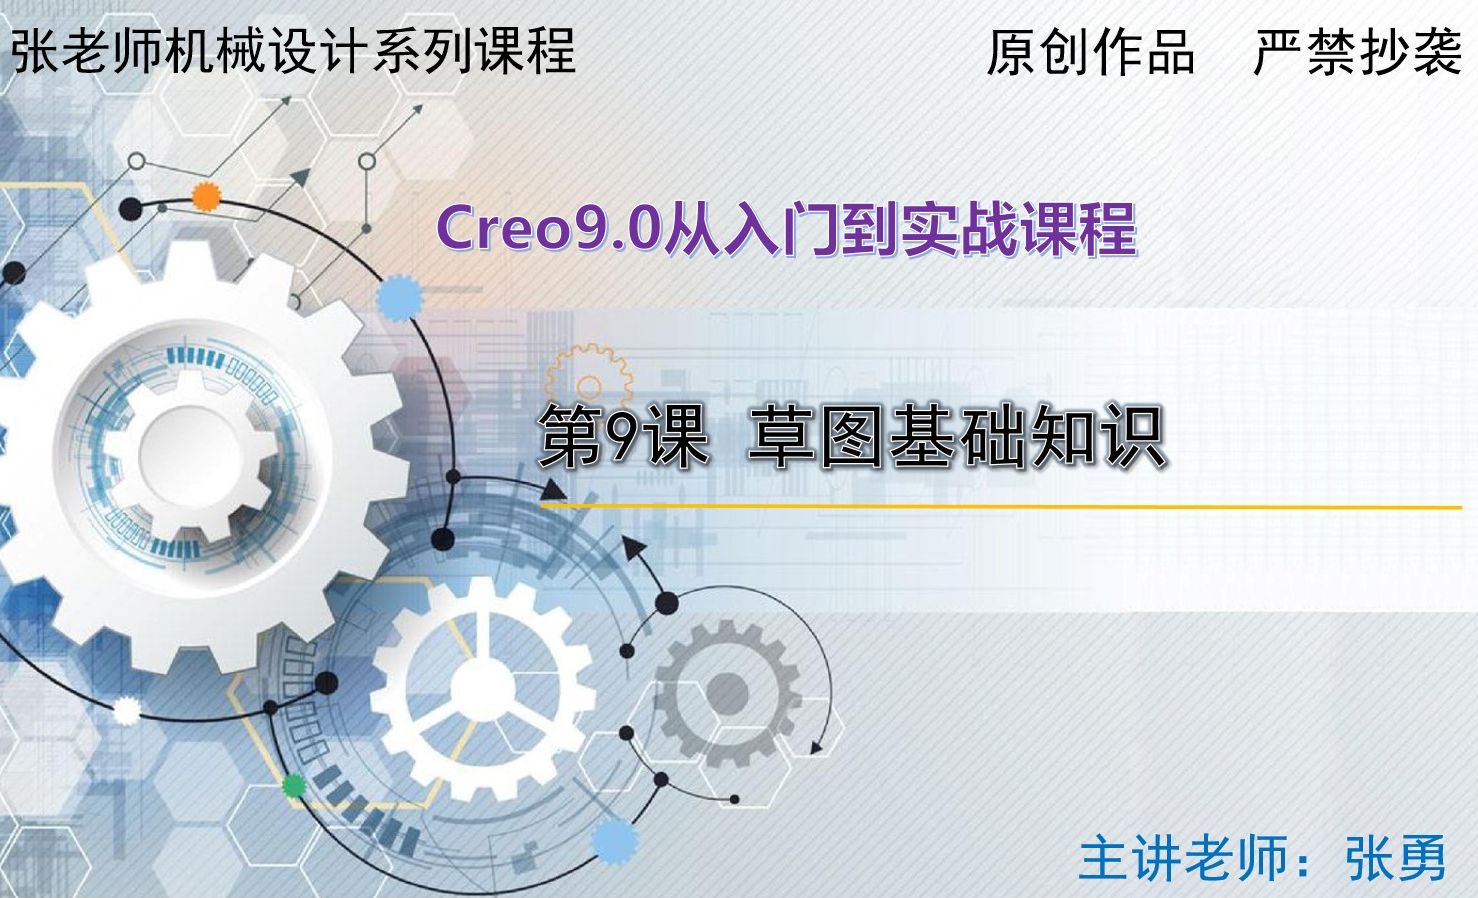 【基础工具】草图基础知识-Creo9.0从入门到实战